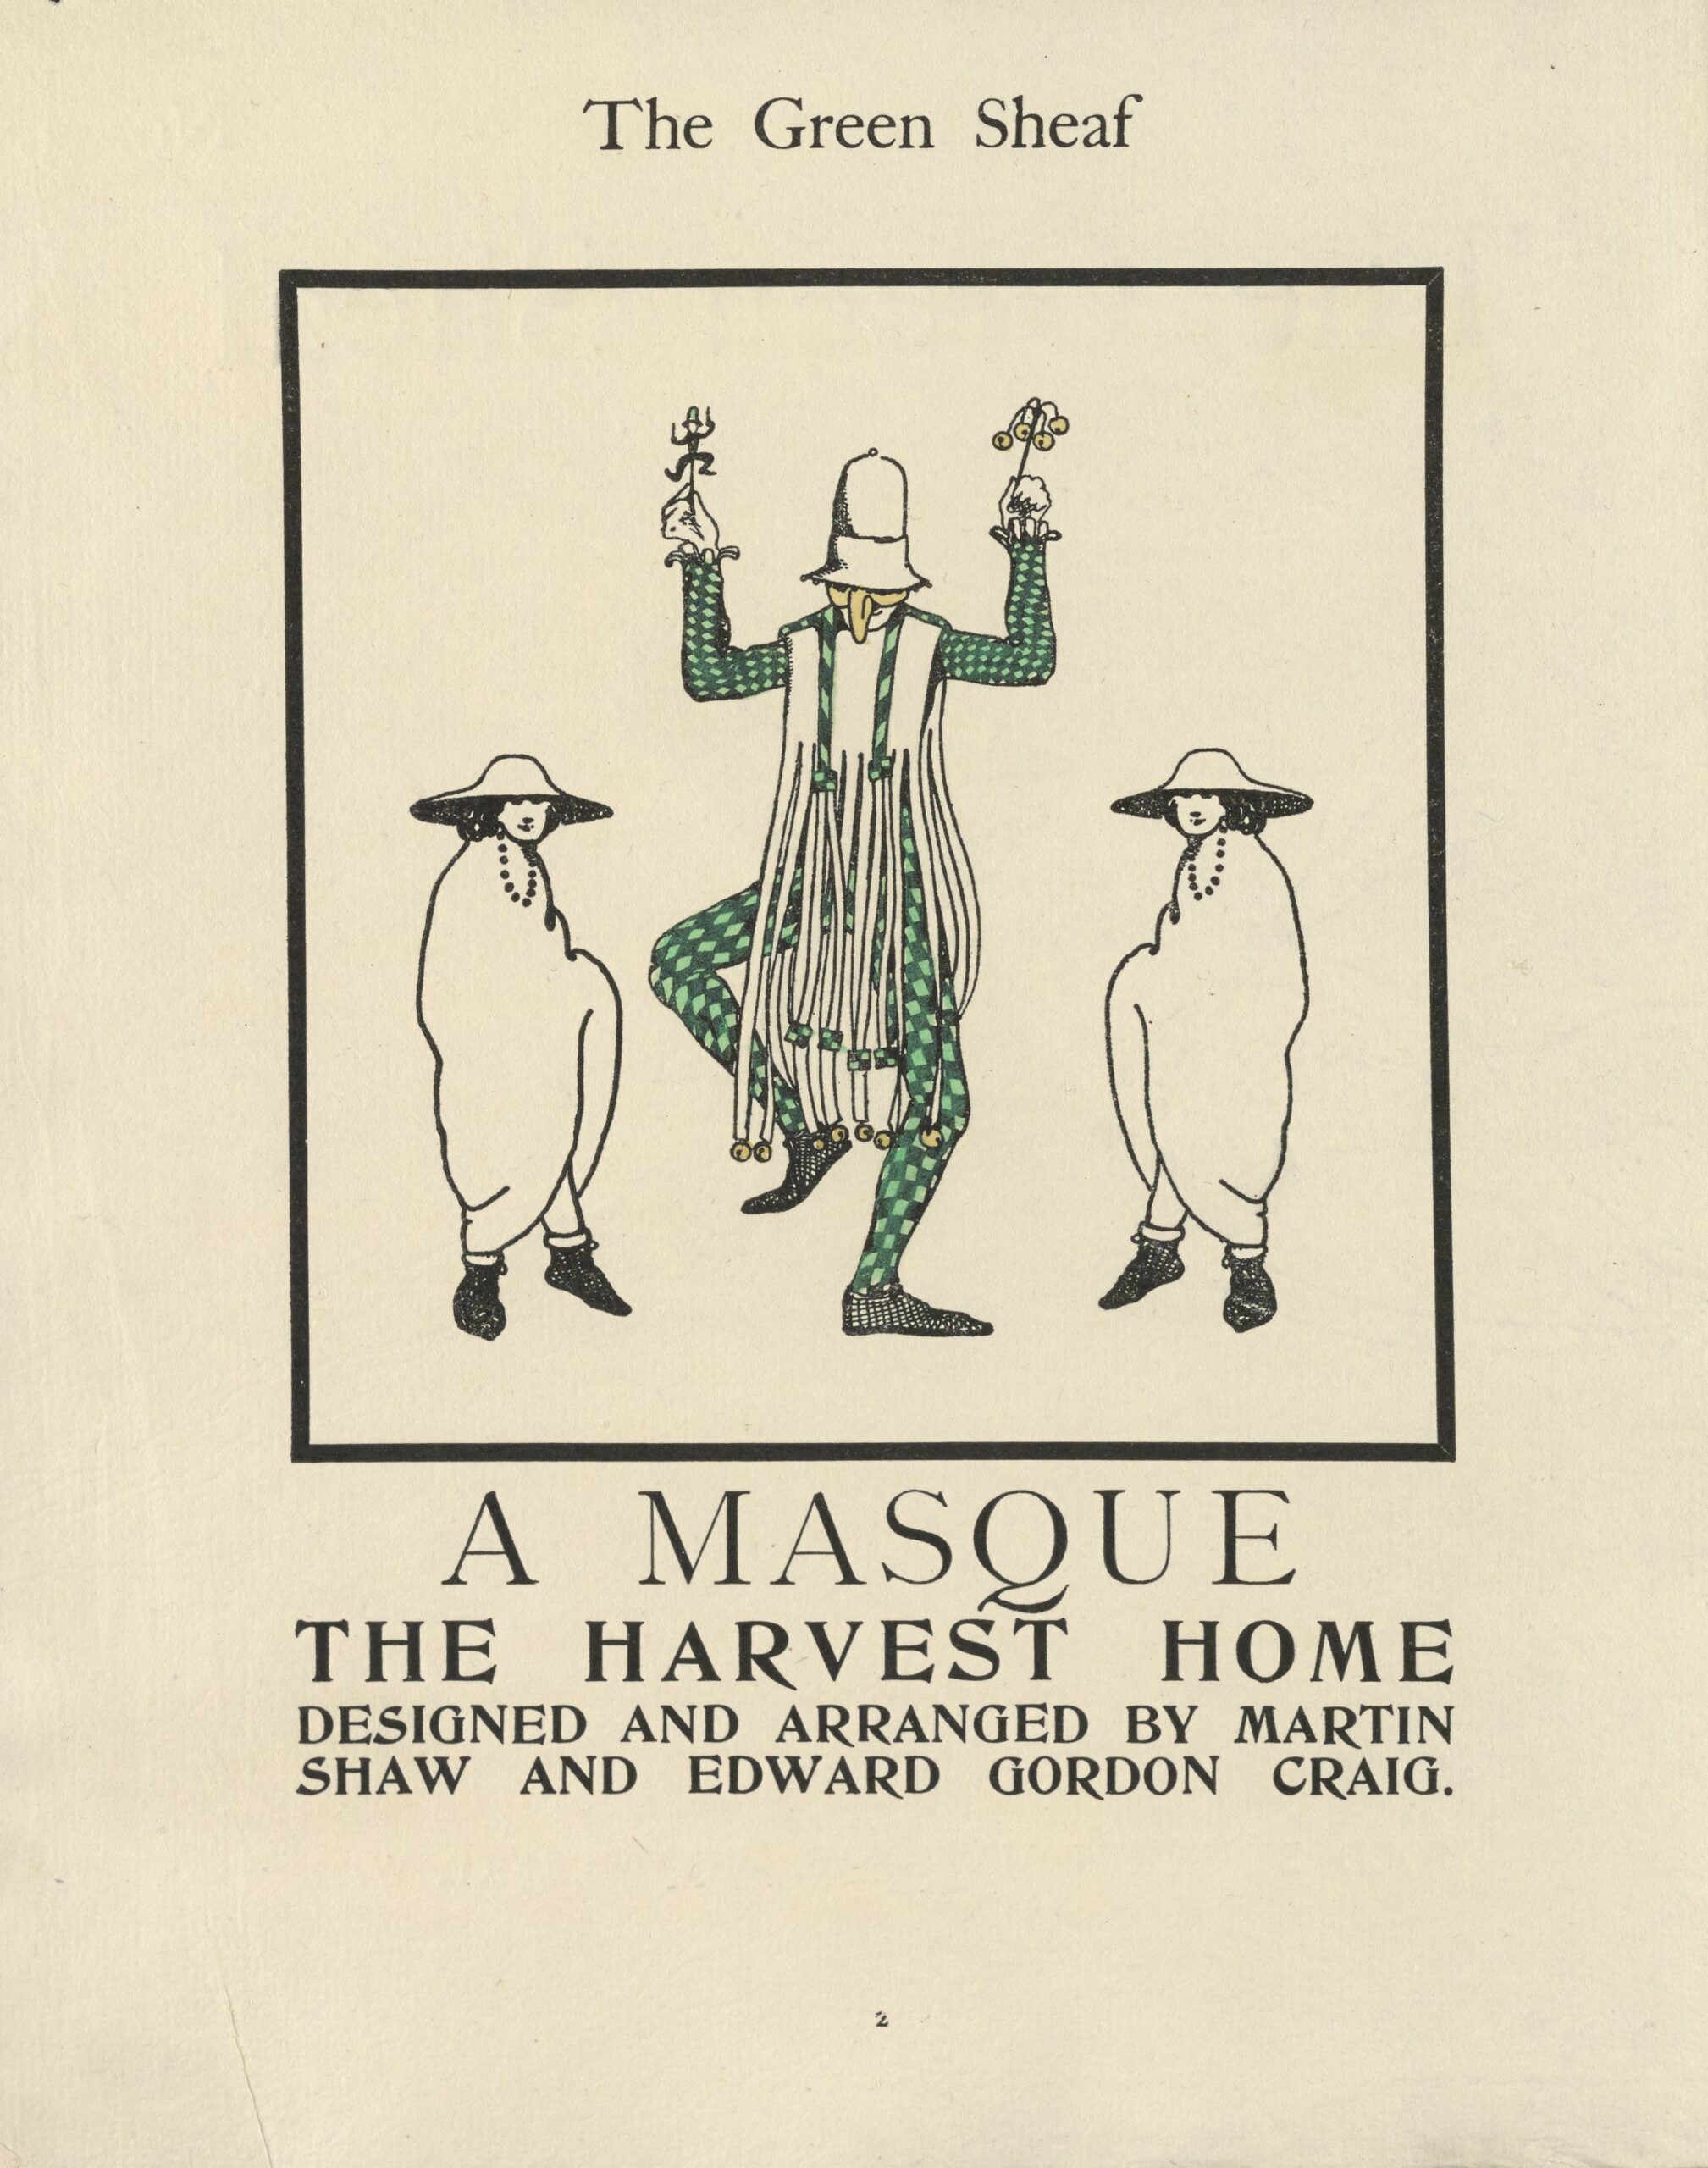   E. Gordon Craig, Design for A Masque: The Harvest Home, The Green Sheaf                No. 3, 1903, p. 2 